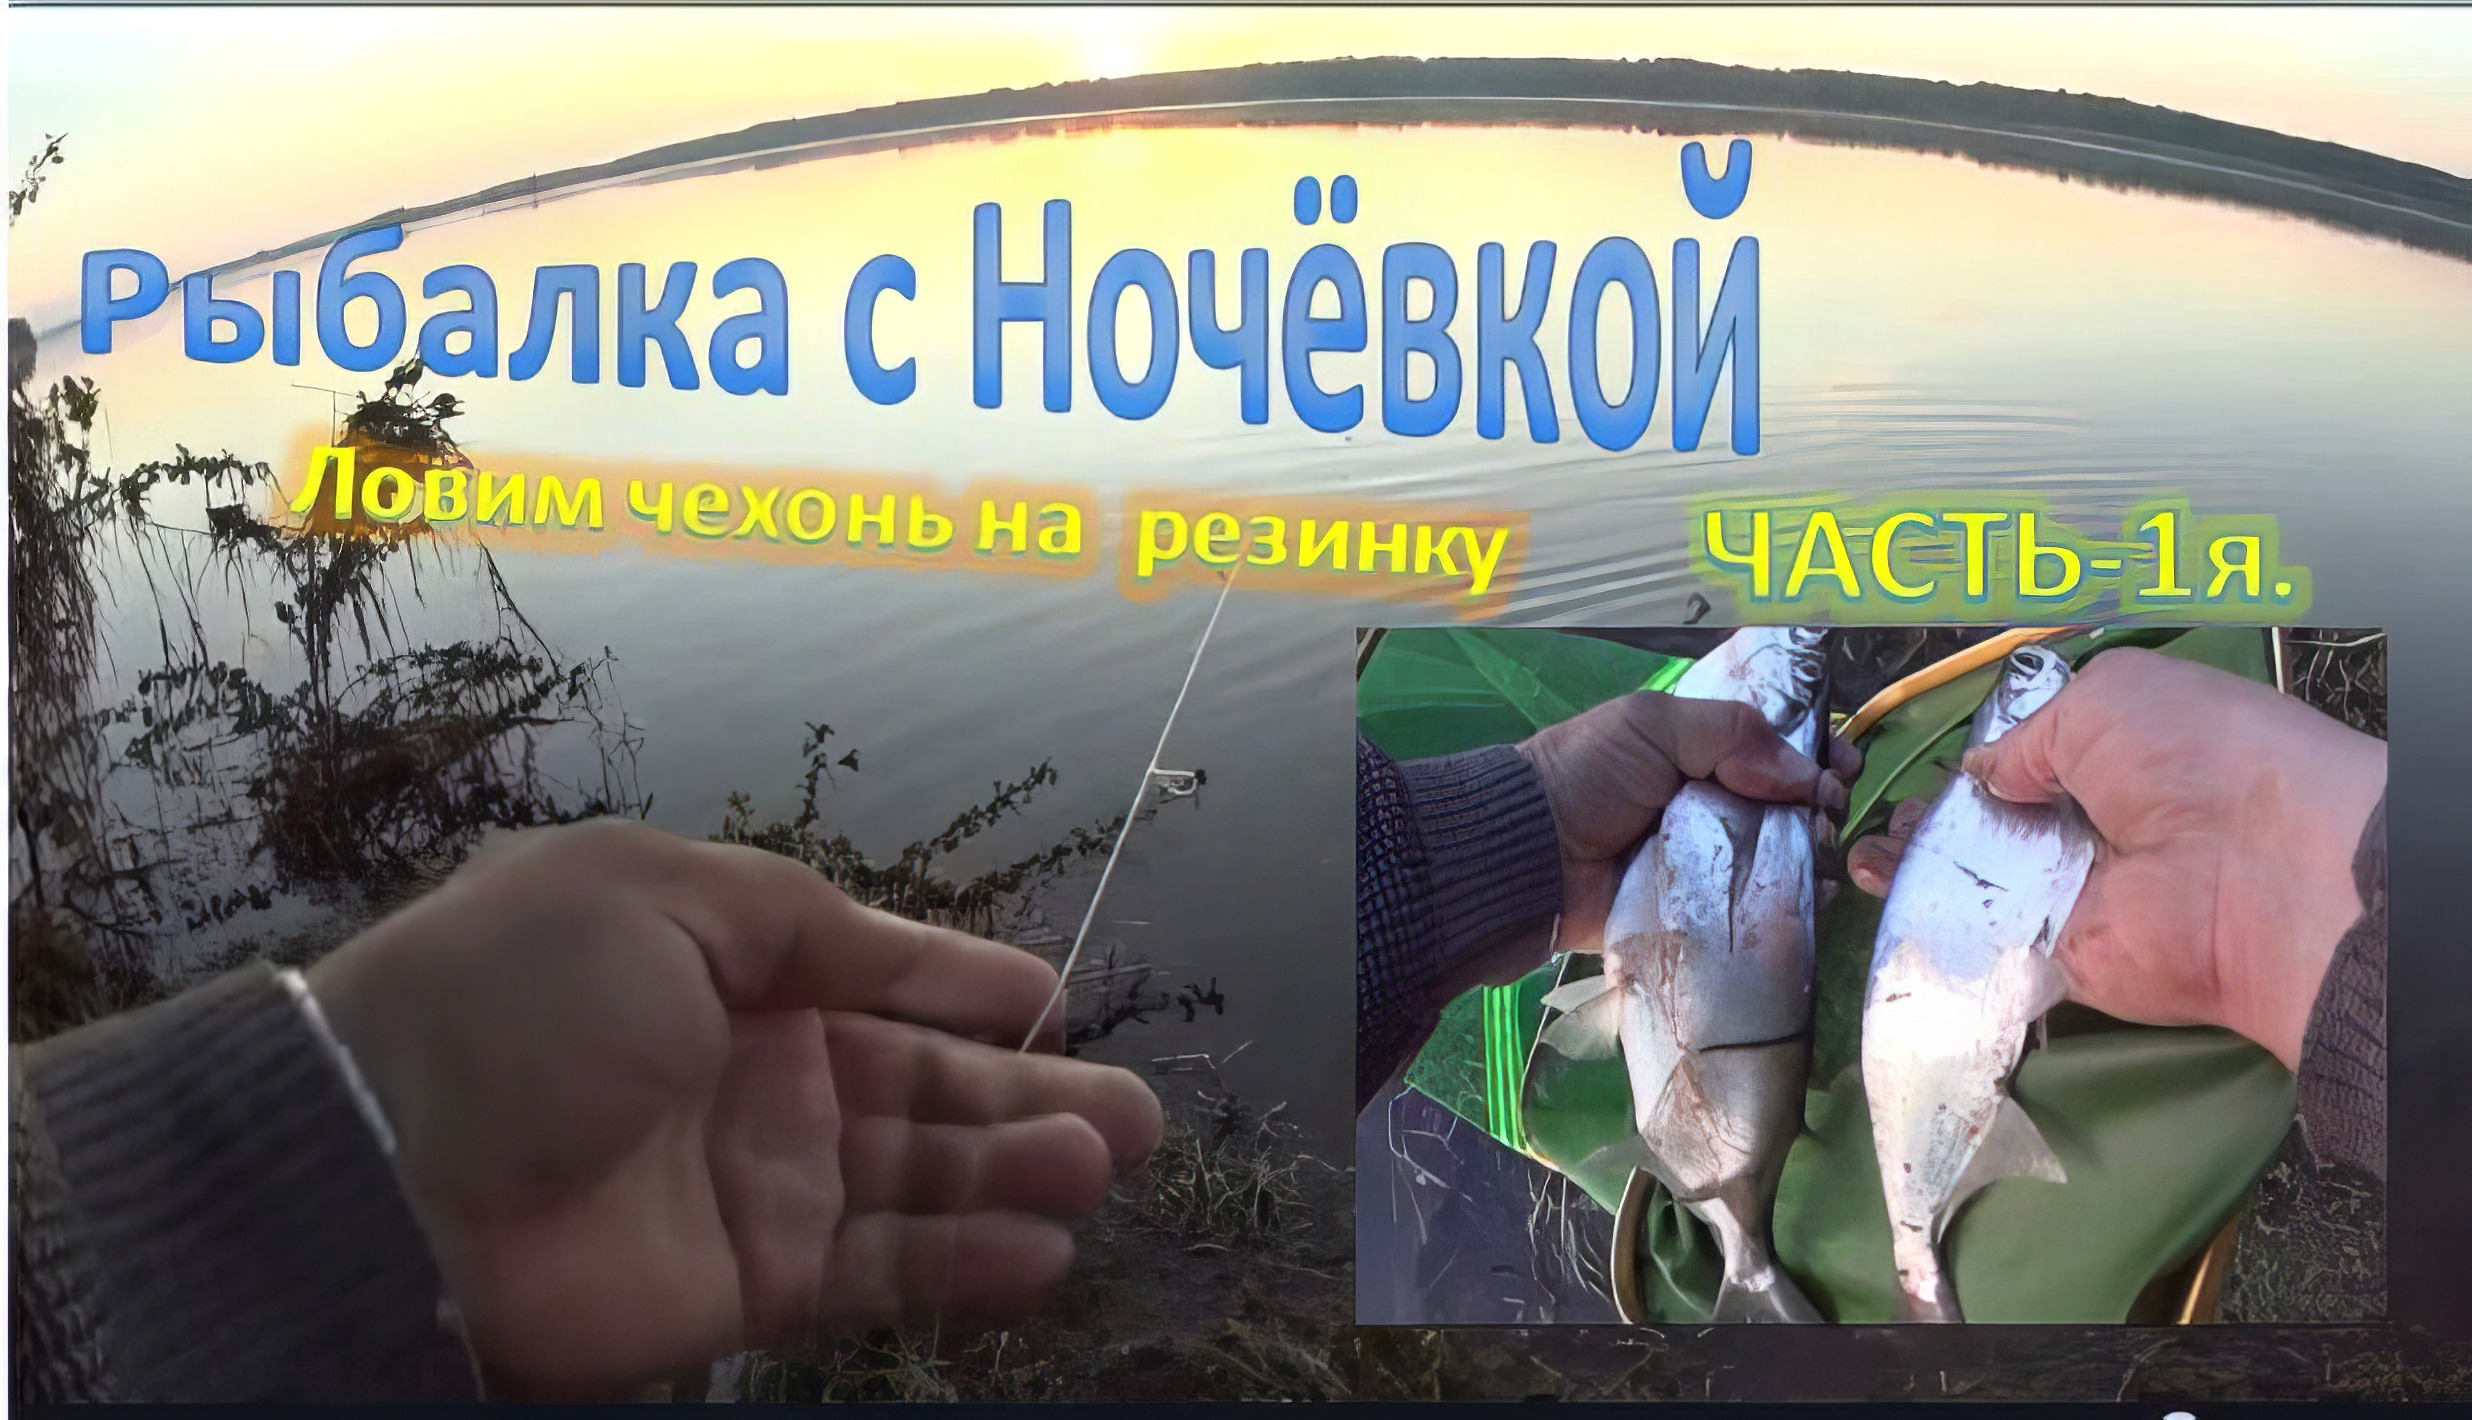 Рыбалка с Ночёвкой  на реке Кама  Ловим чехонь на  резинку.(Часть -1я)